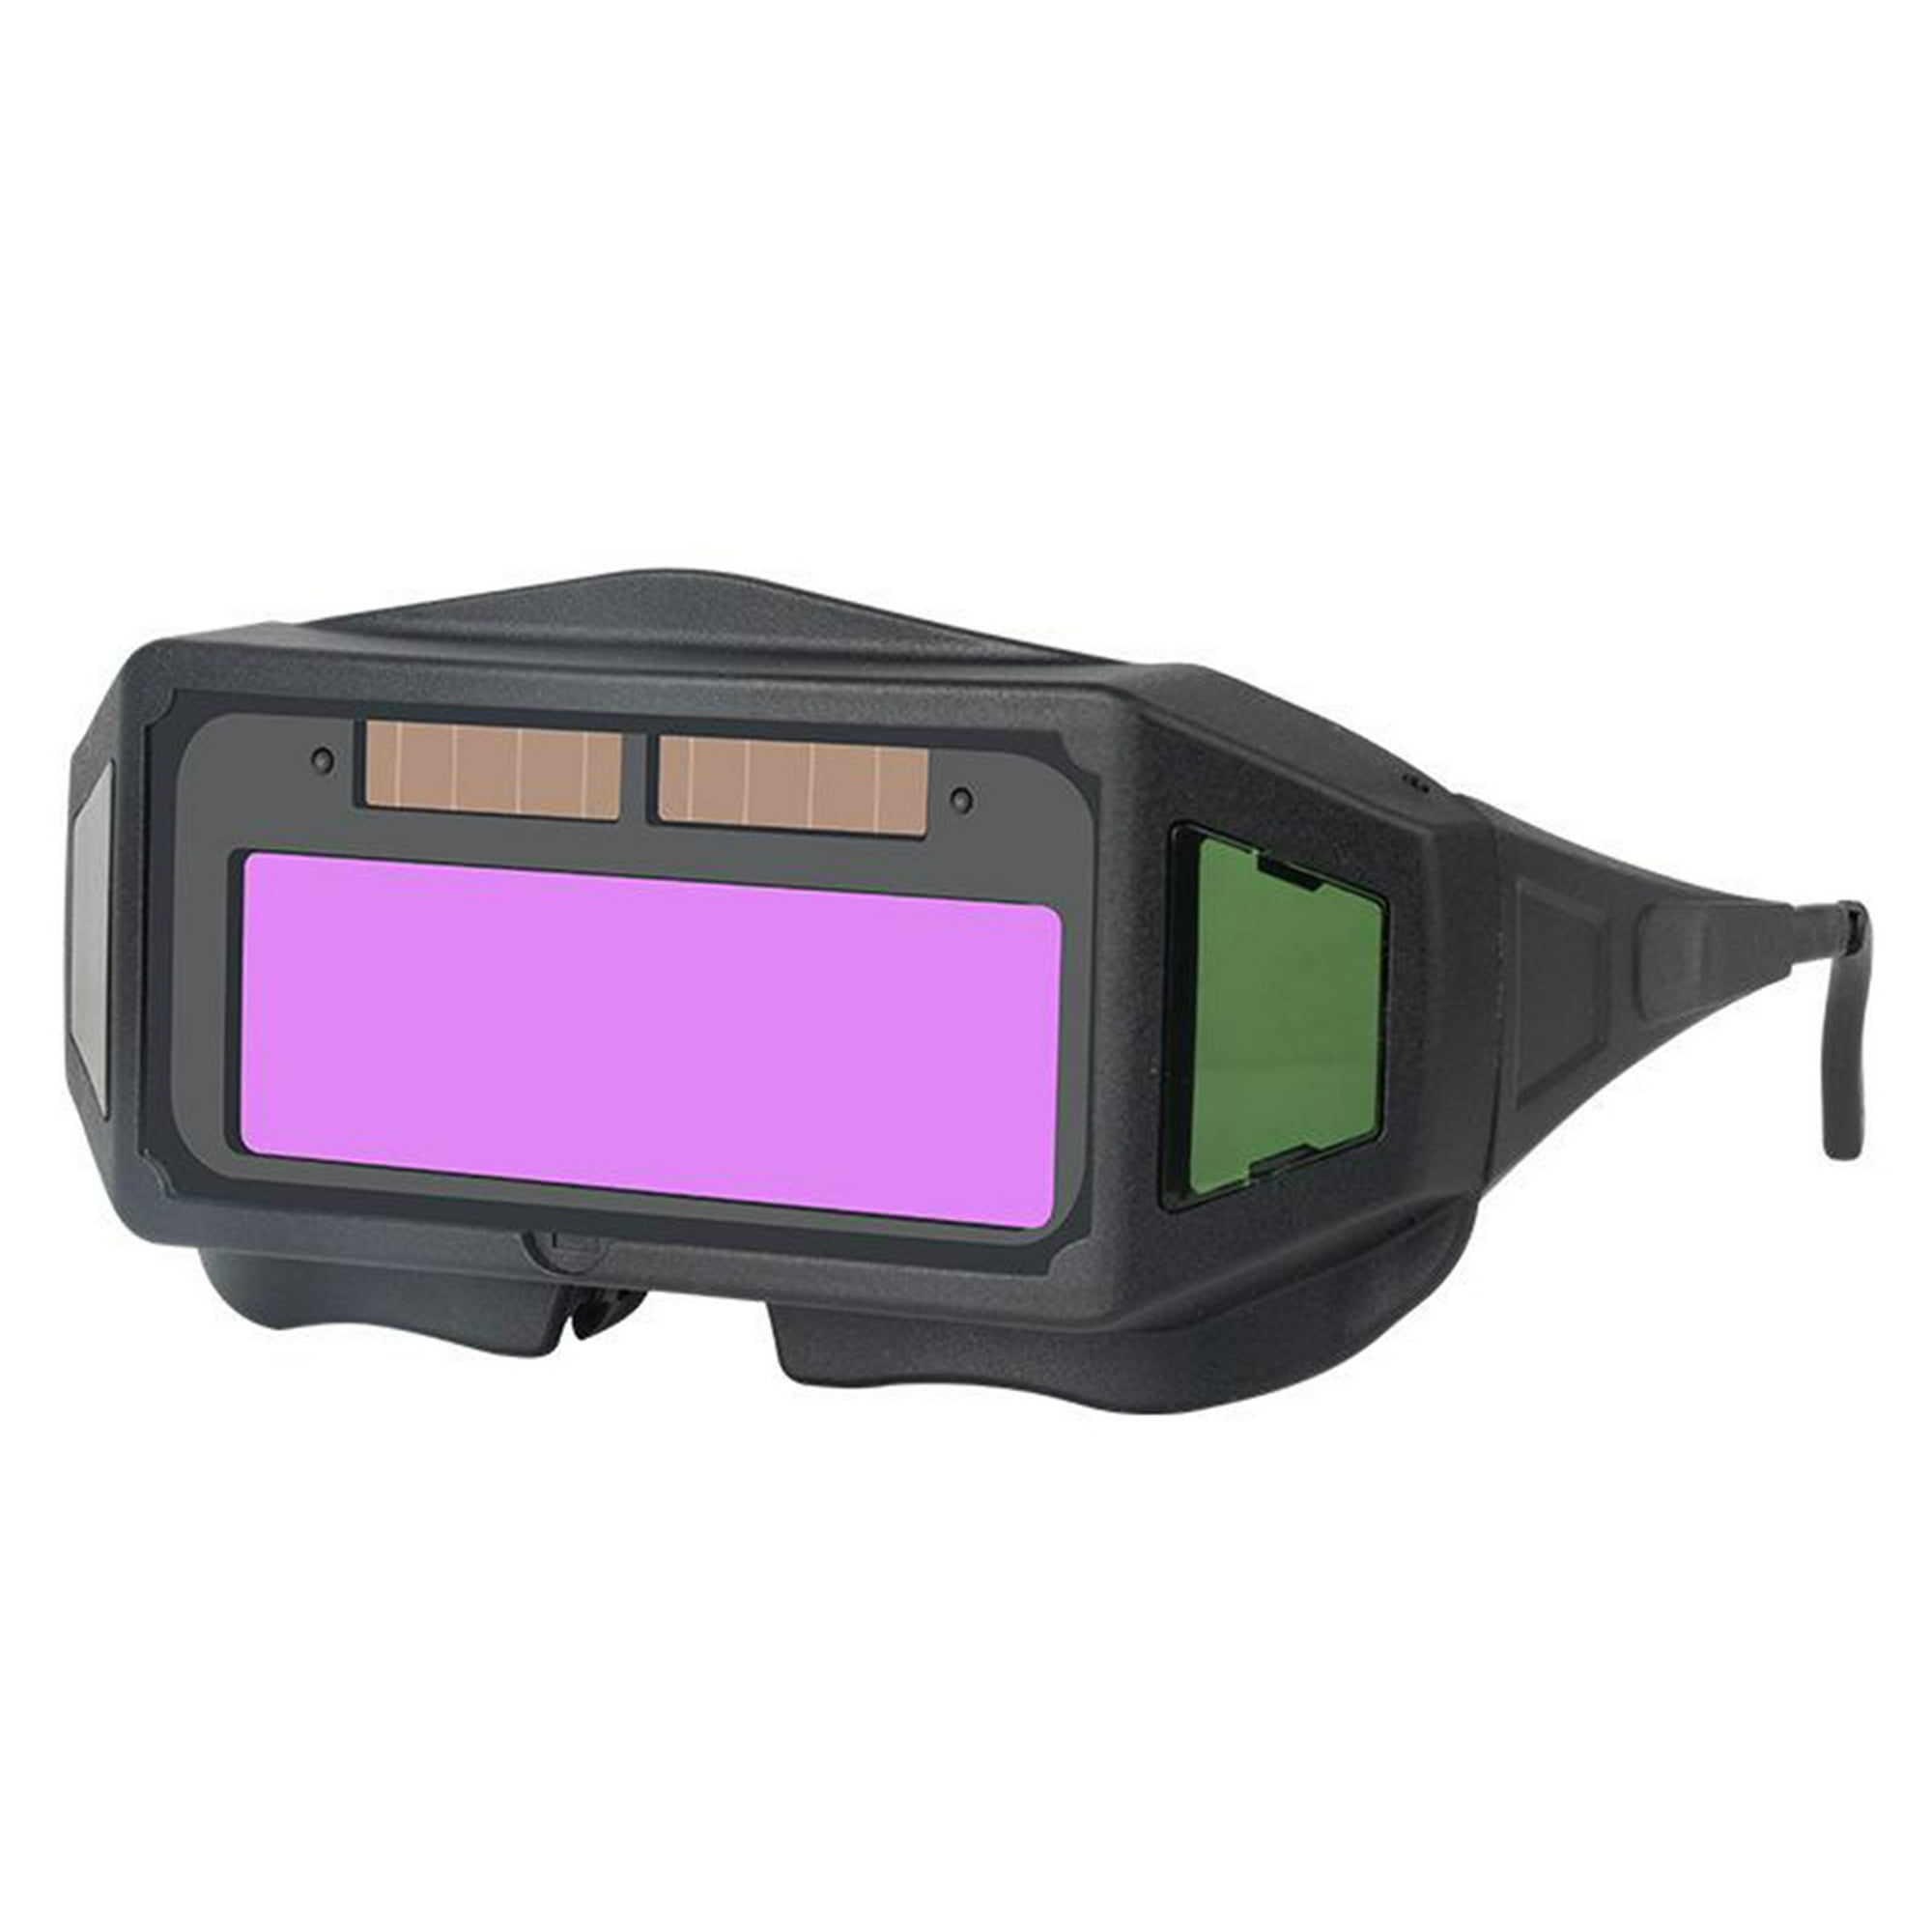 Lentes Irfora Gafas de soldar eléctricas de luz variable automática gafas  de protección ultravioleta y luz fuerte del soldador Irfora Lentes